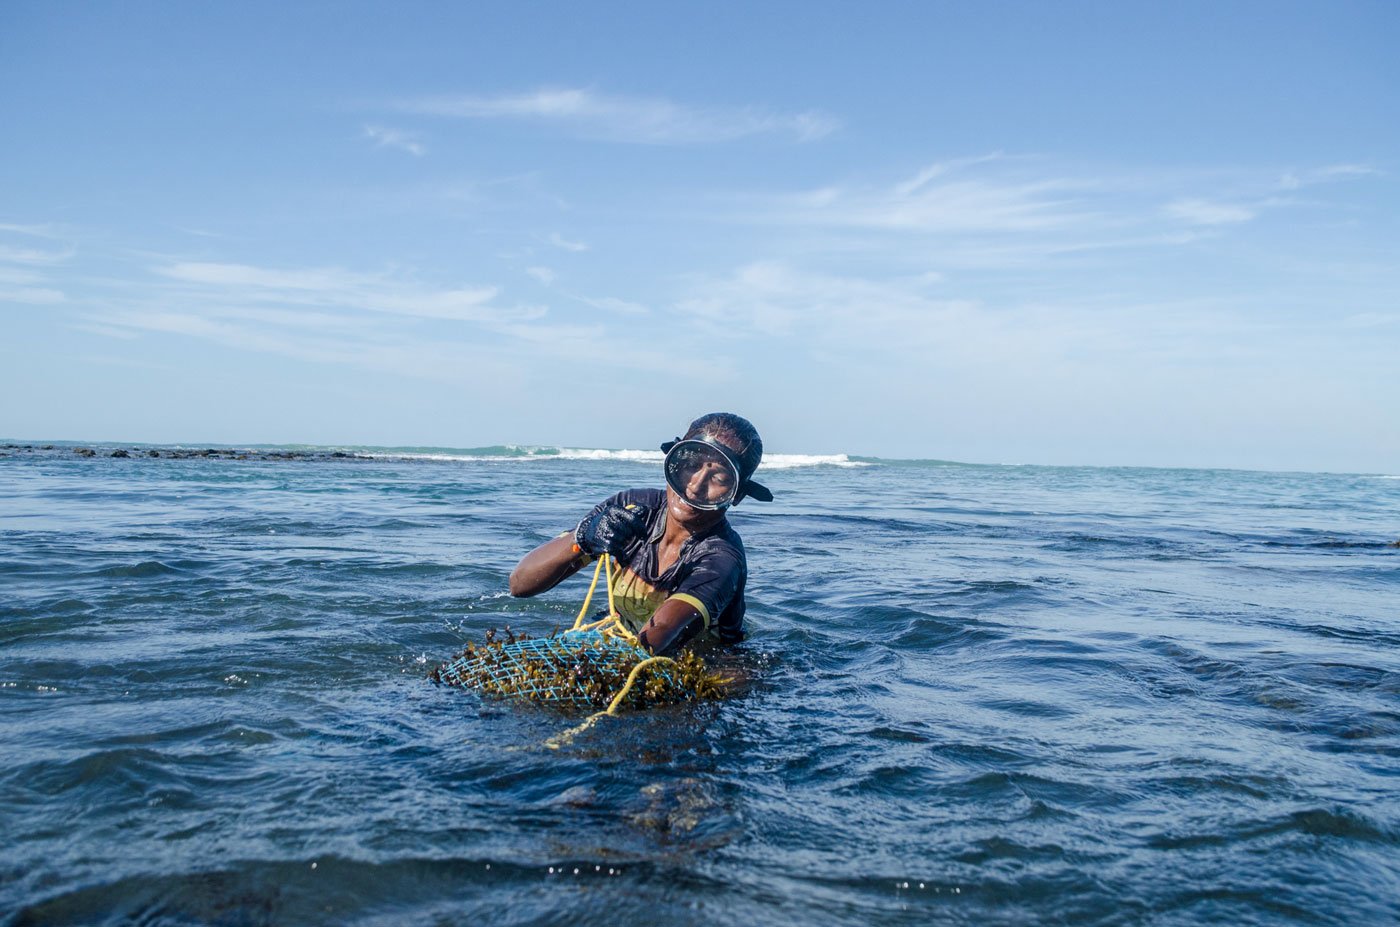 Tamil Nadu S Seaweed Harvesters In Rough Seas